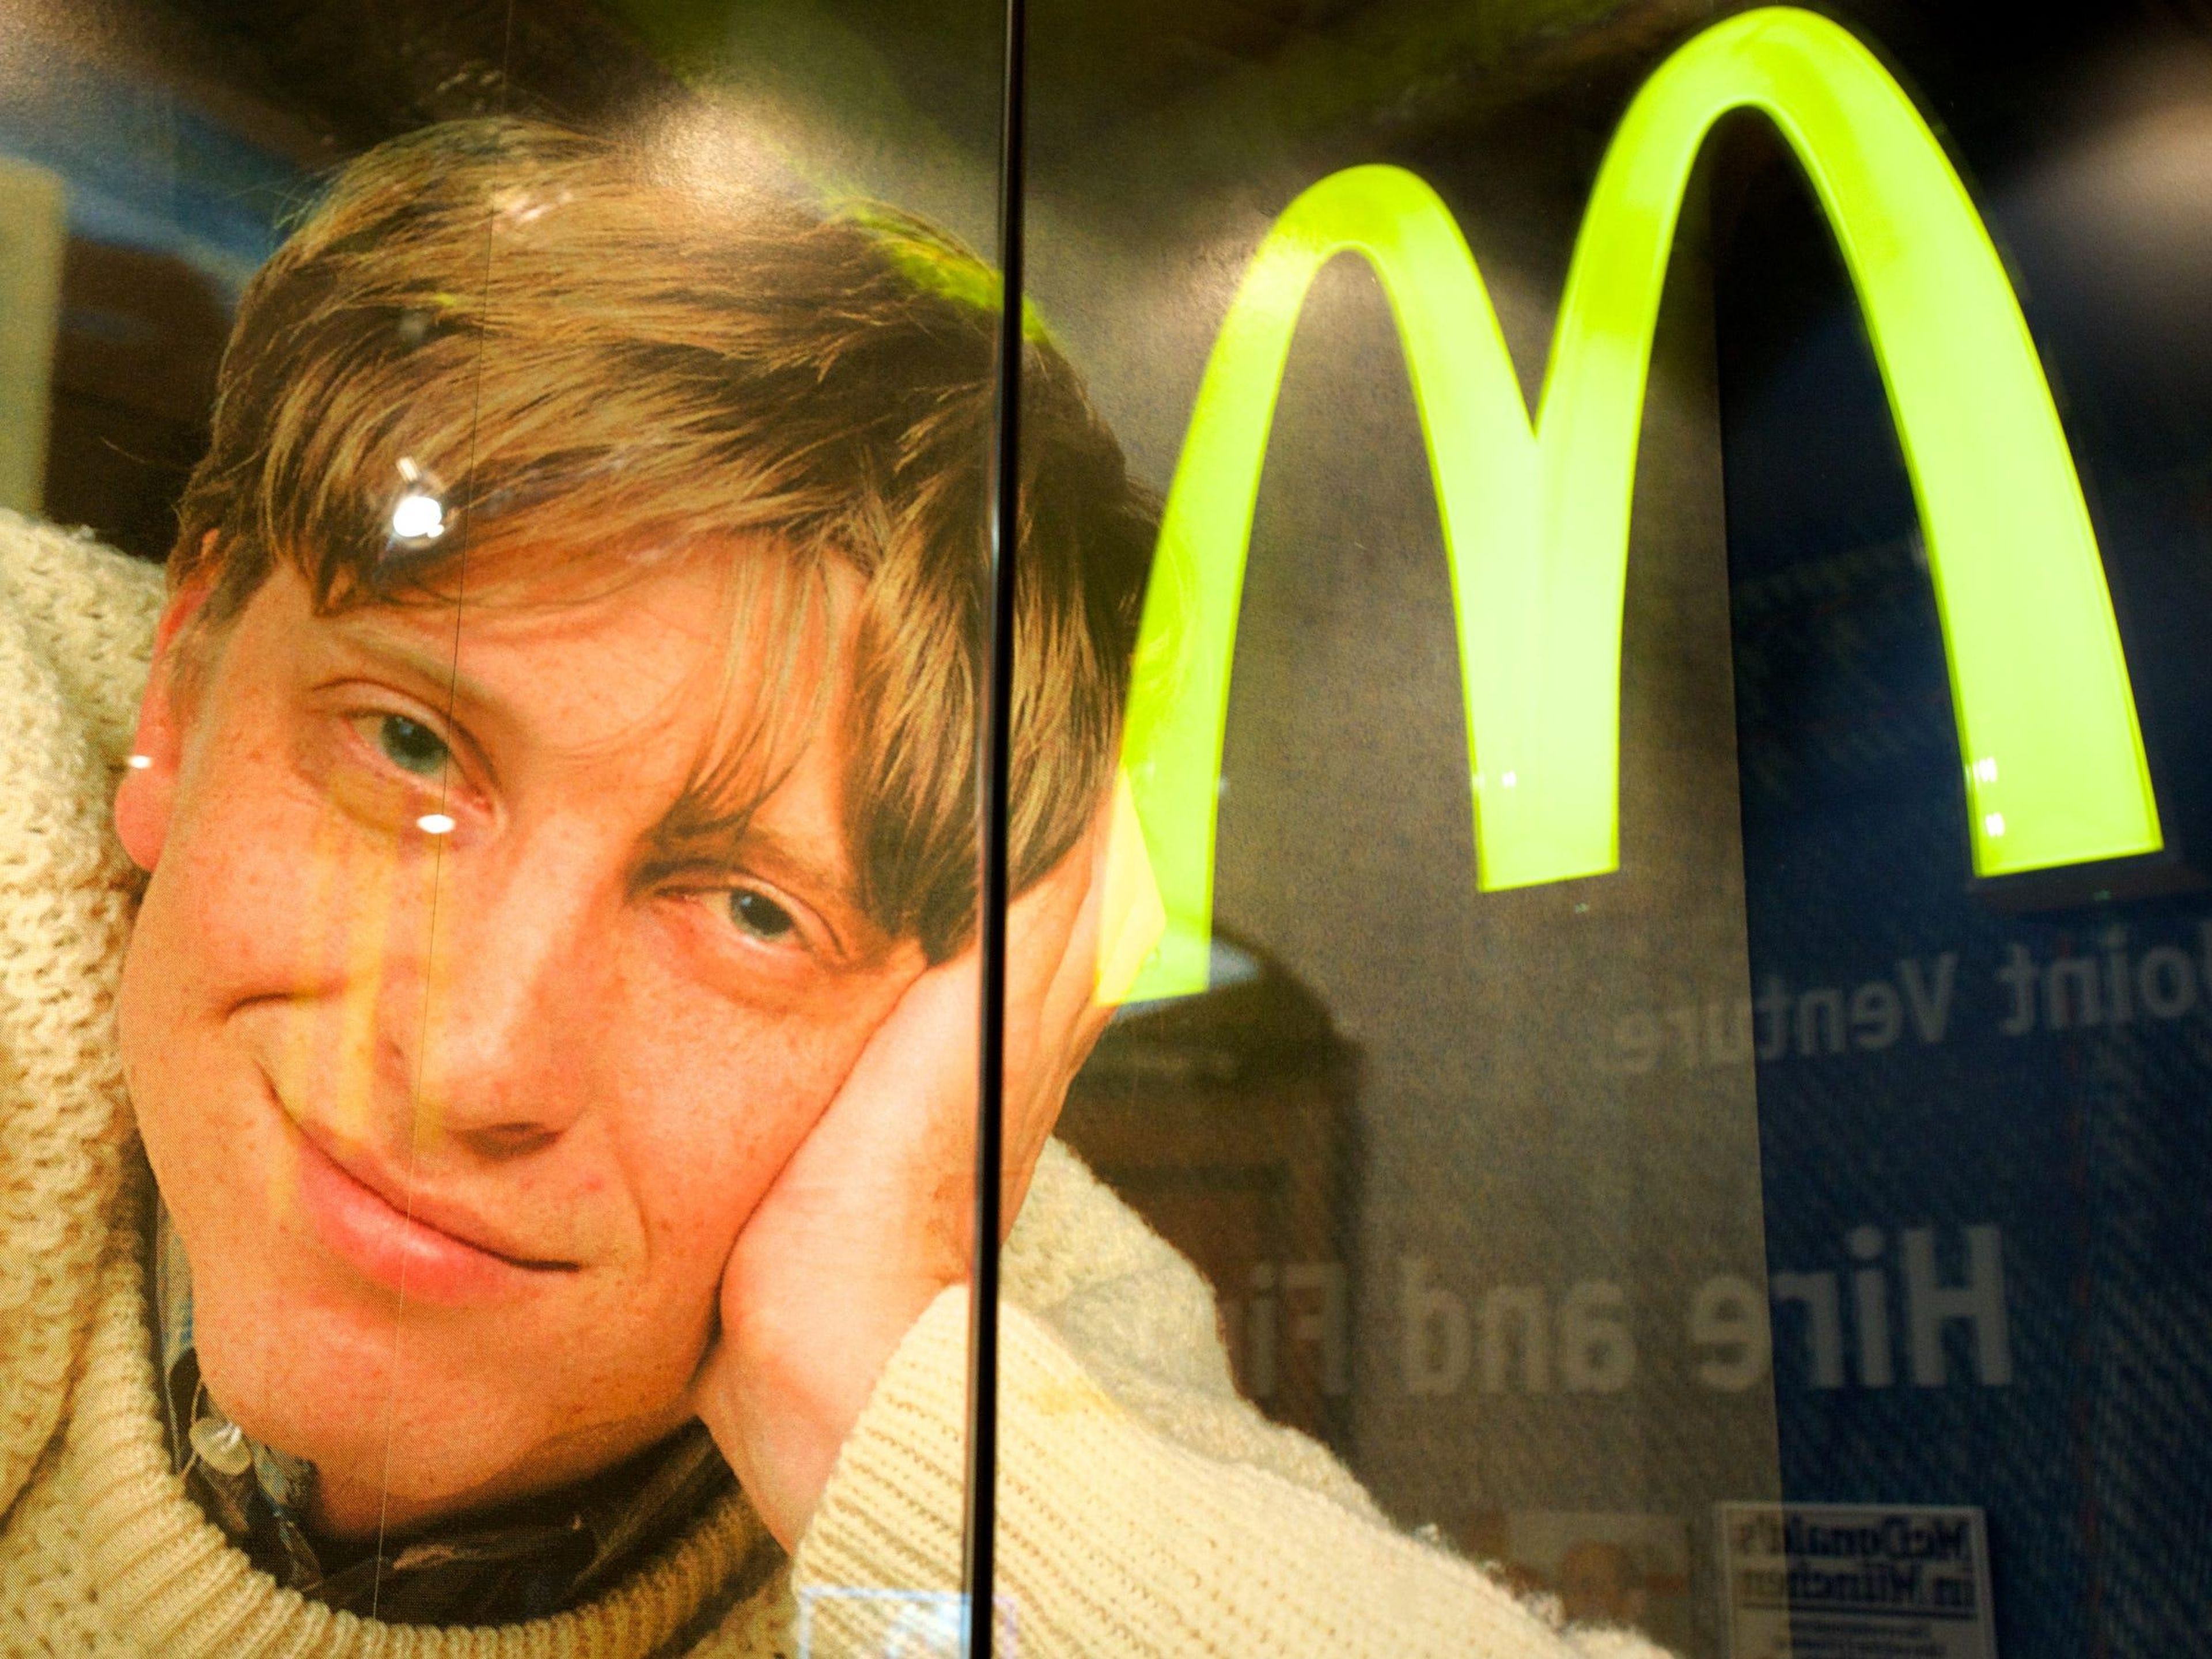 Una imagen de Bill Gates con el logotipo de McDonald's en exhibición en 2014 en una exhibición llamada "The American Way: The USA in Germany".